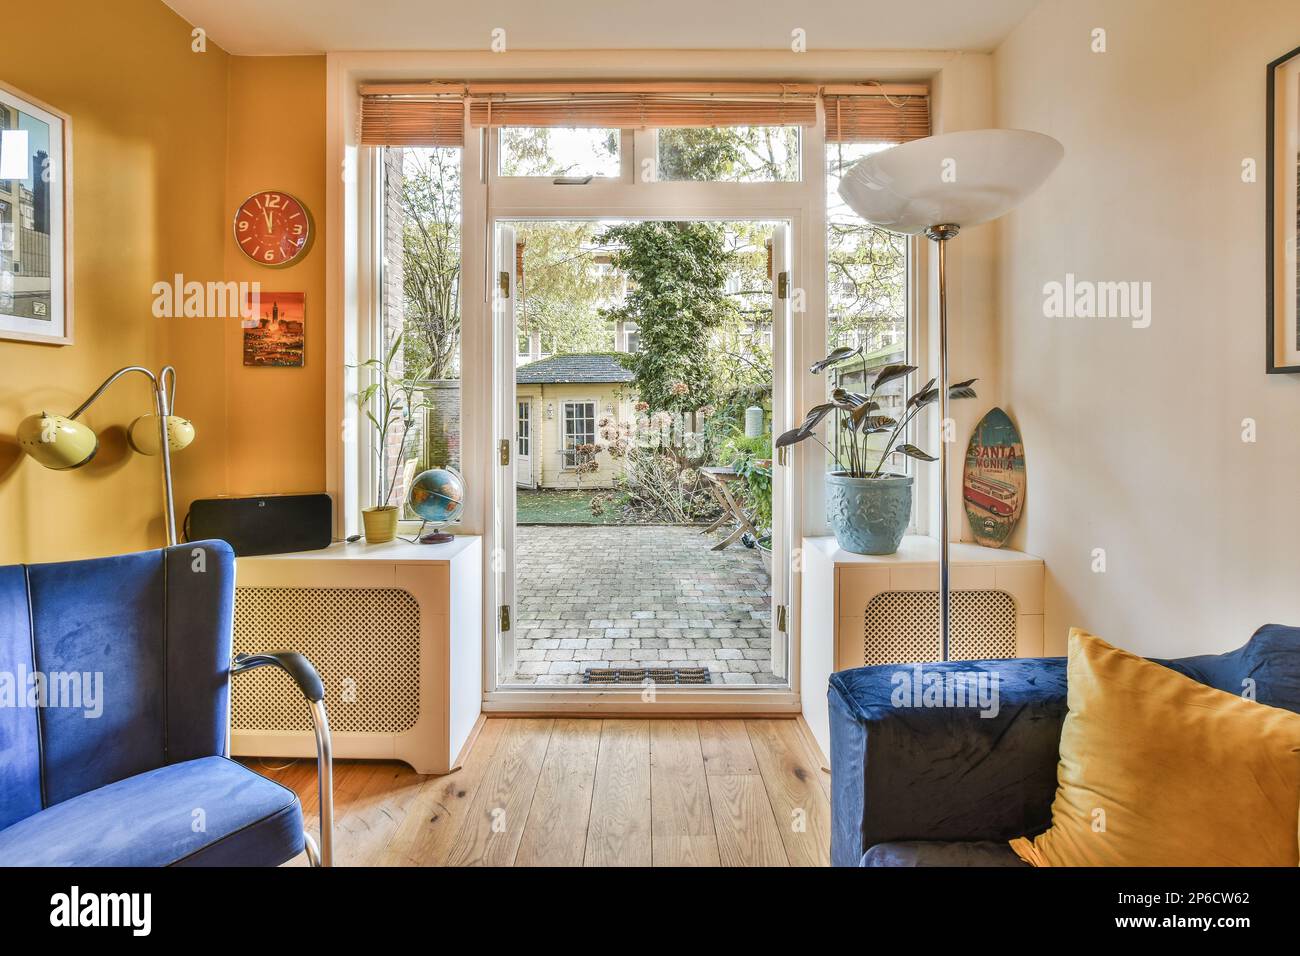 Ein Wohnzimmer mit gelben Wänden und blauen Sofas, eine offene Tür zum Garten im Hintergrund Stockfoto